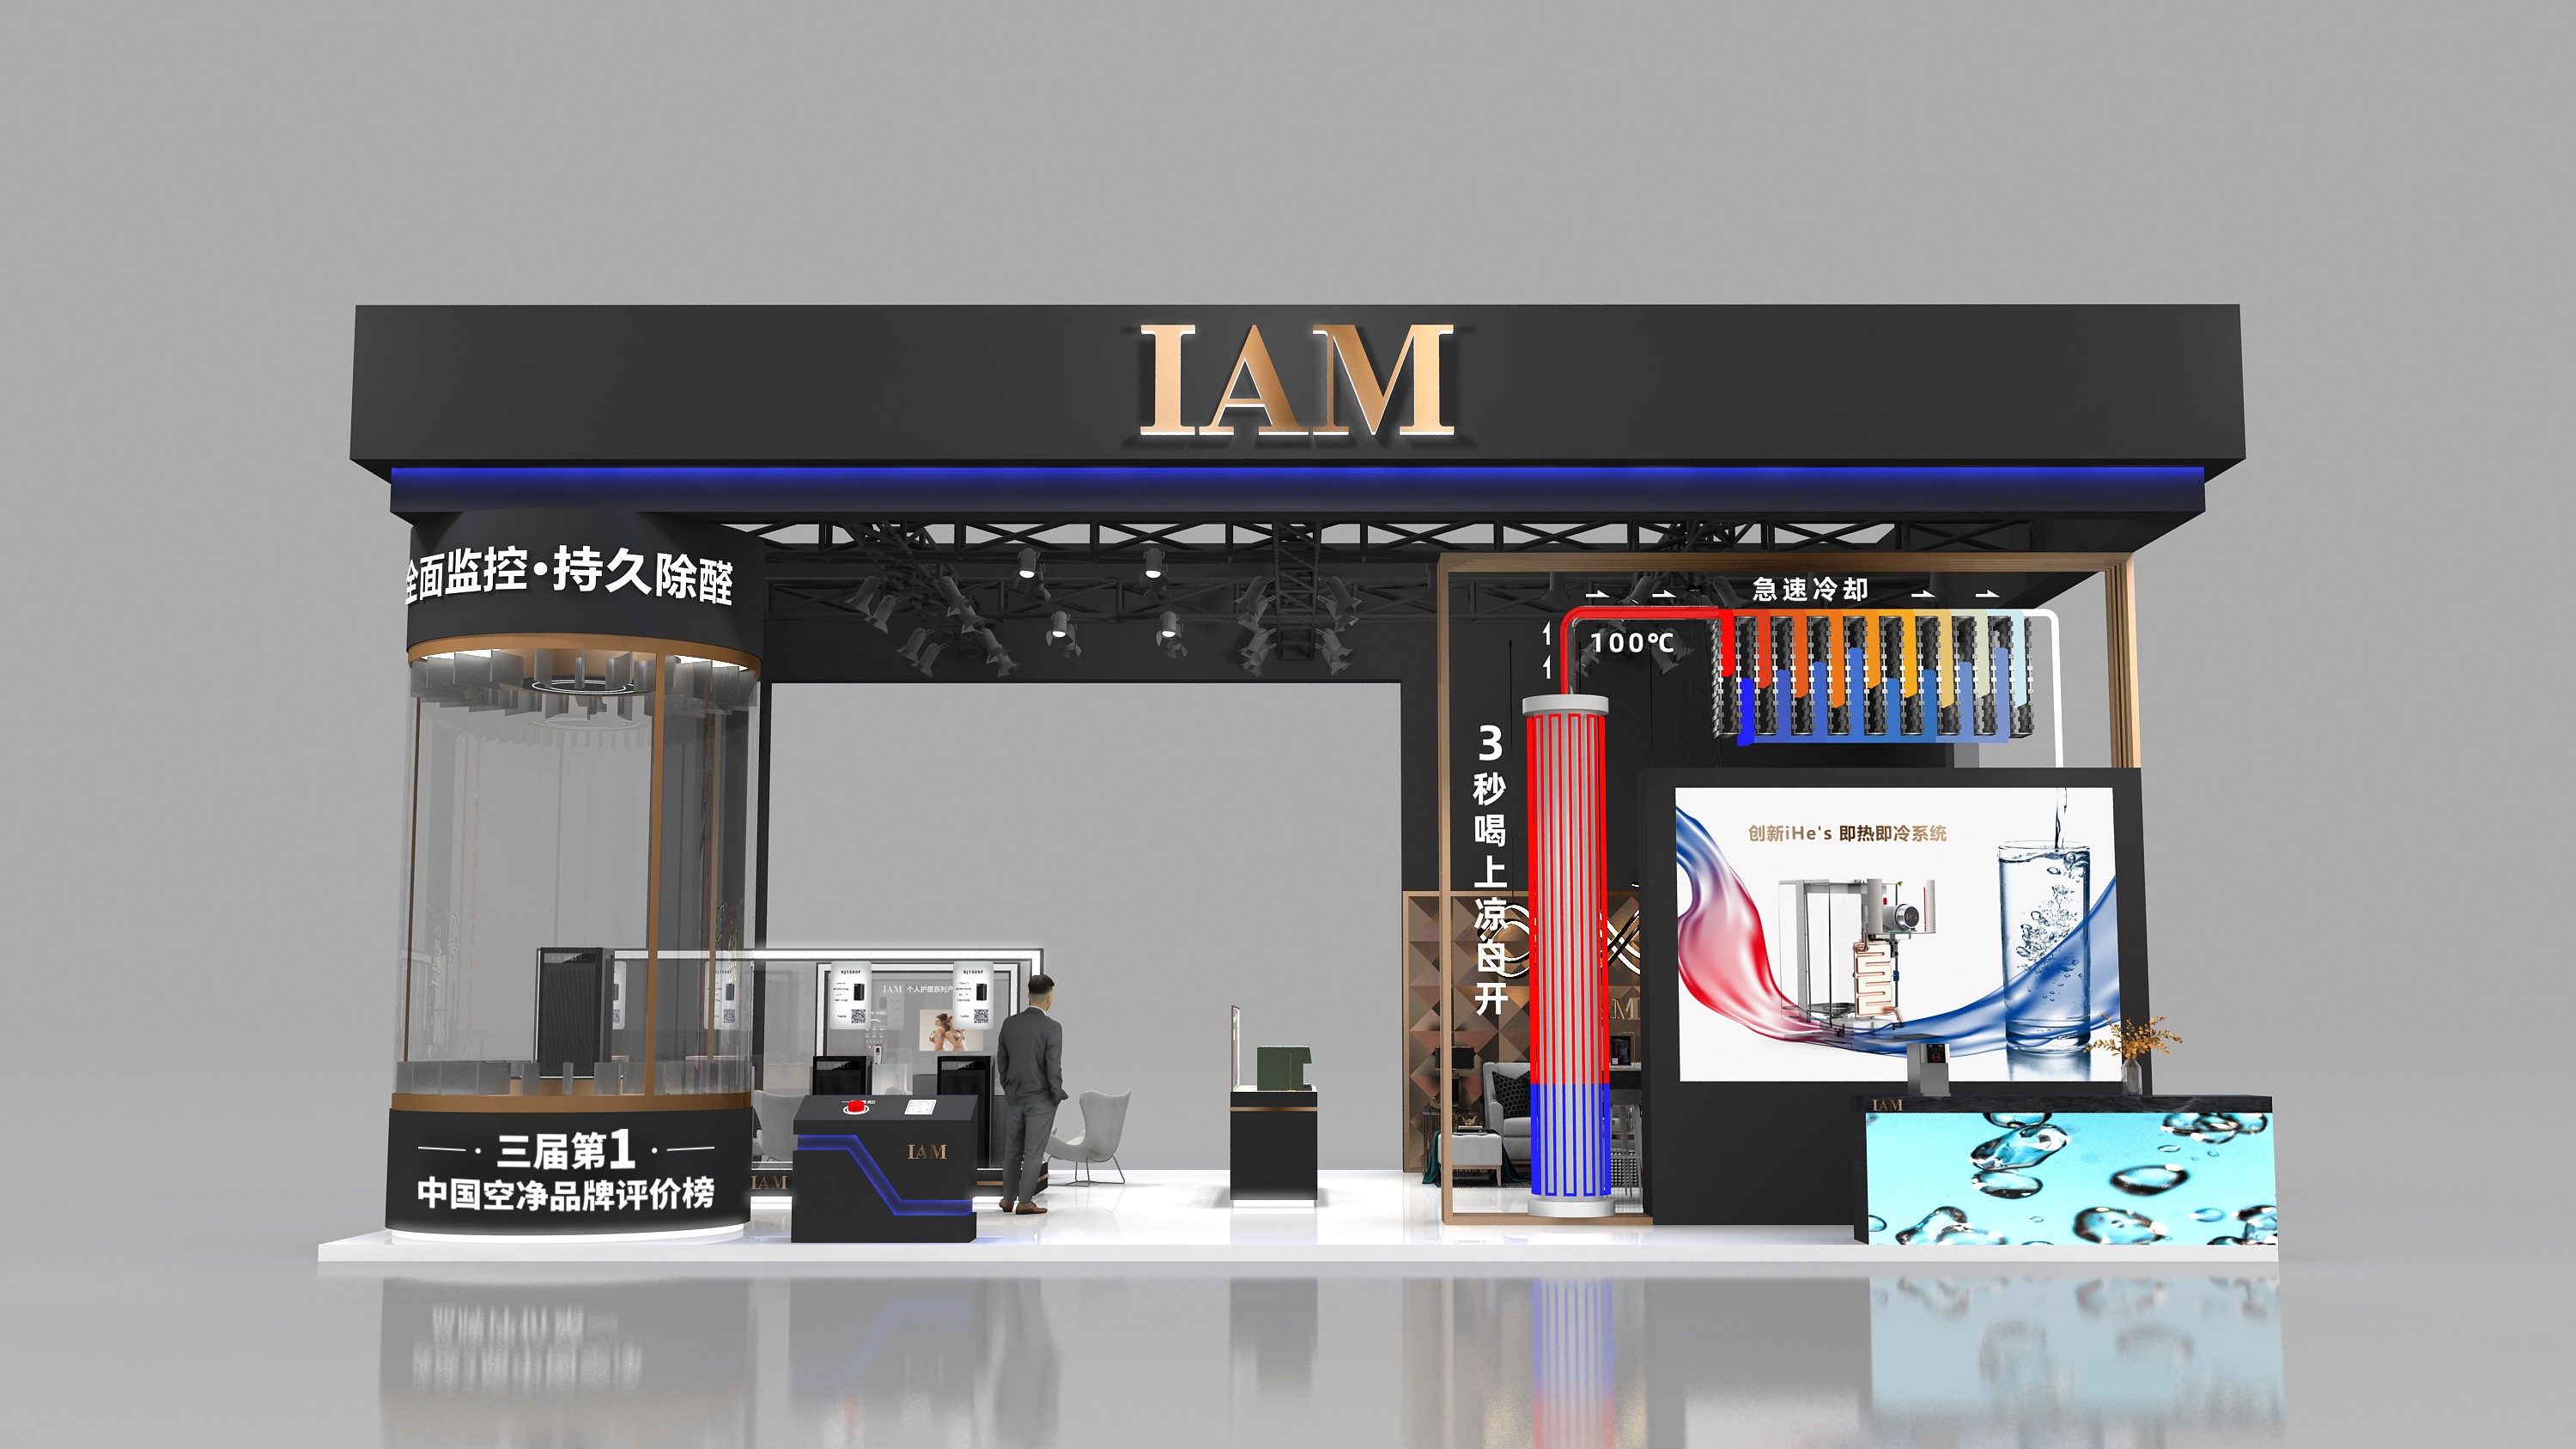 第二届中国国际消博会即将开启，IAM携熟水机等产品亮相